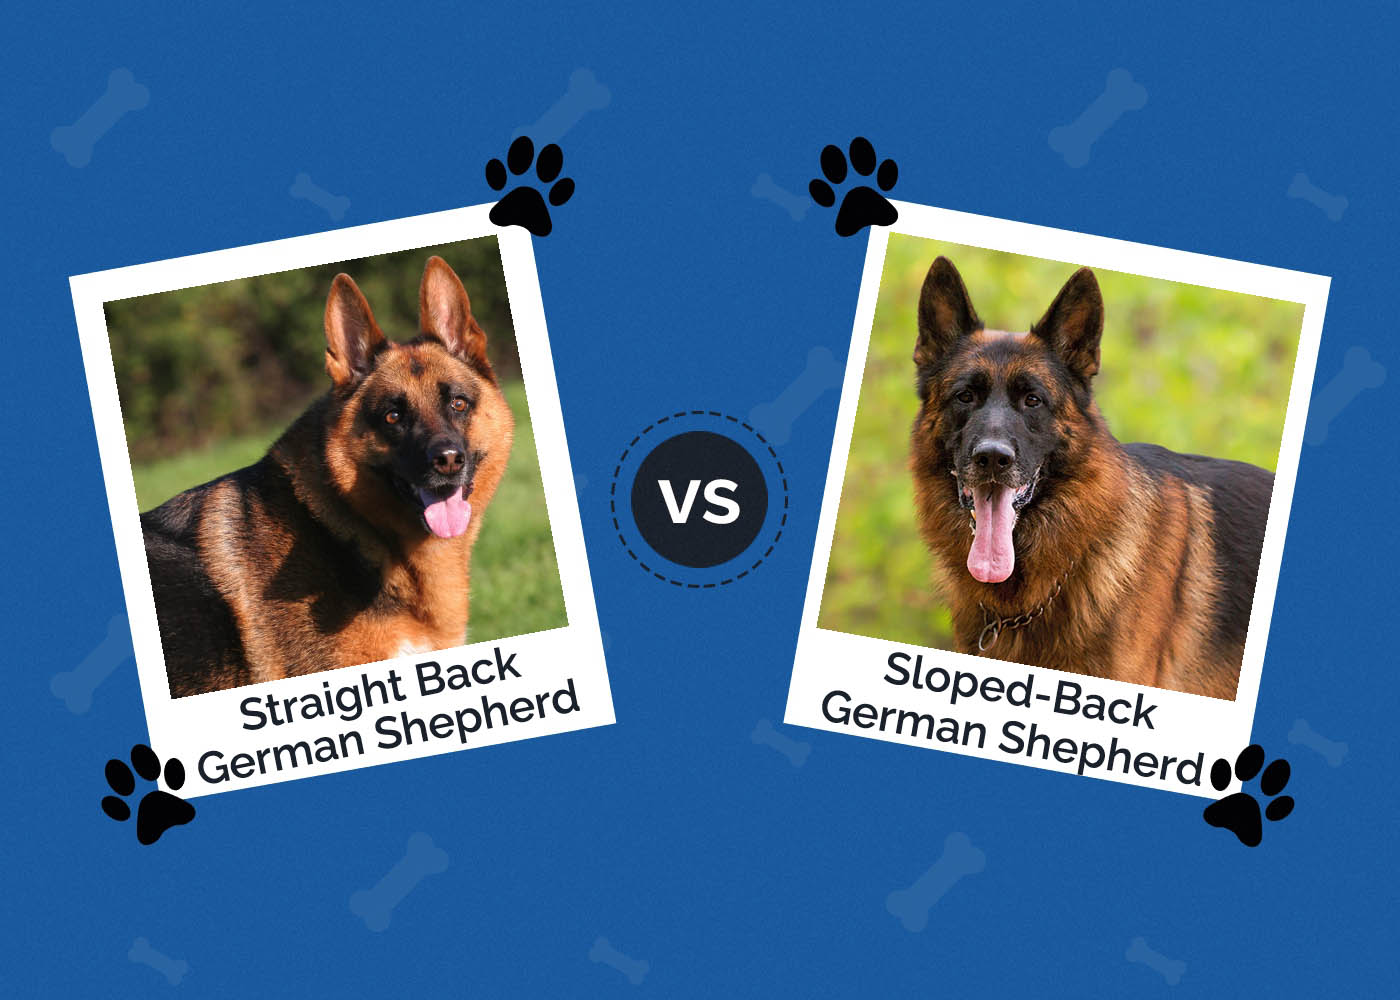 Straight Back vs Sloped-Back German Shepherd